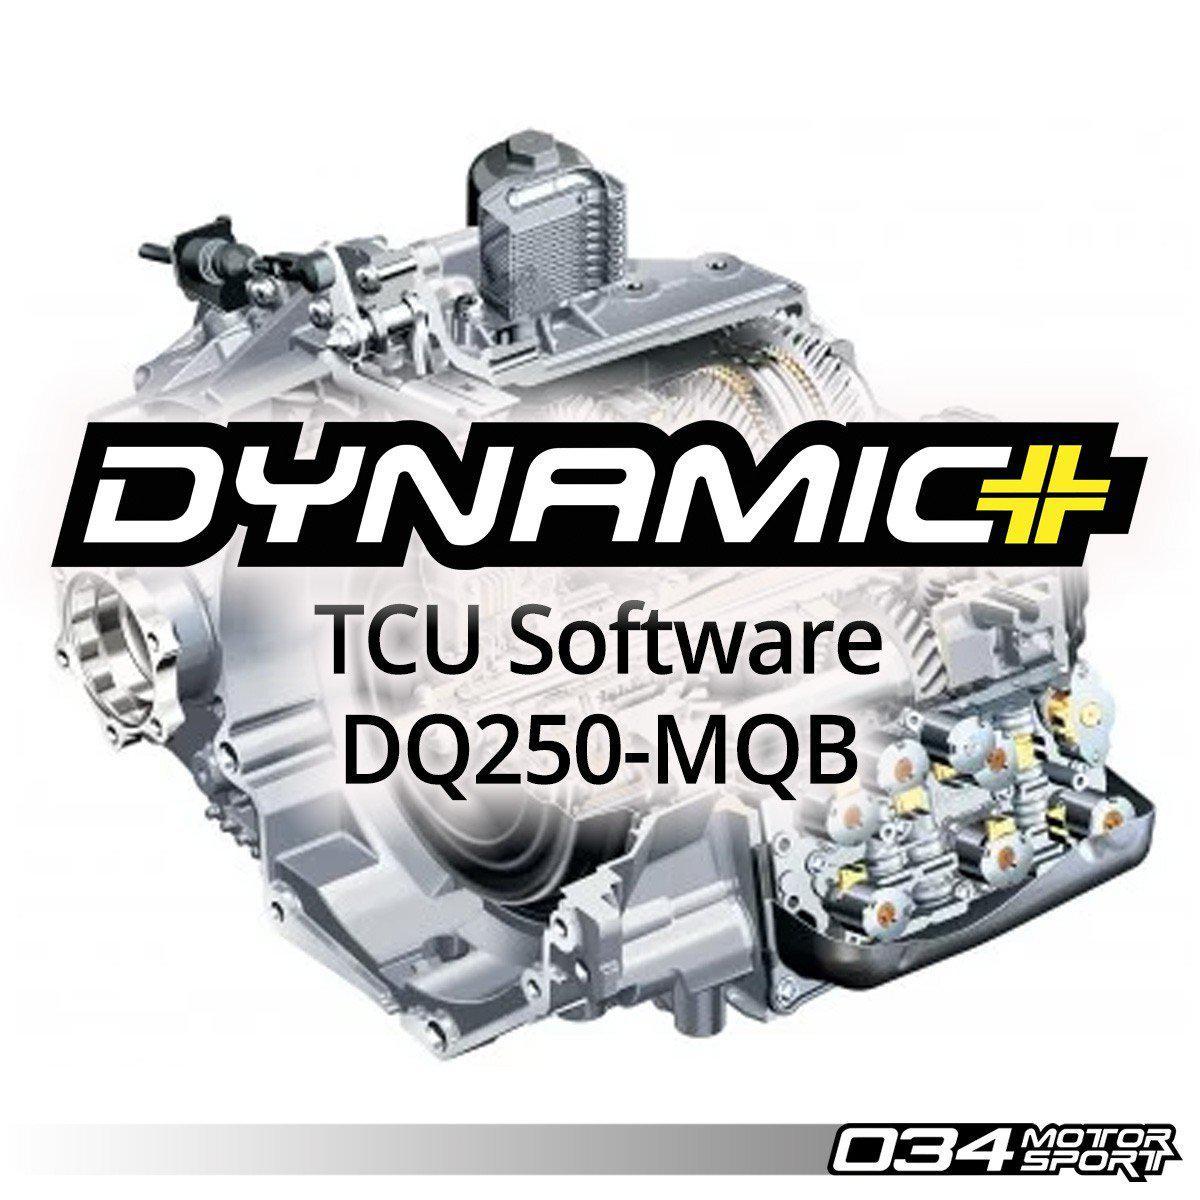 Dsg Software Upgrade For MKVII Volkswagen &amp; 8S/8V Audi, Dq250 Transmission-A Little Tuning Co